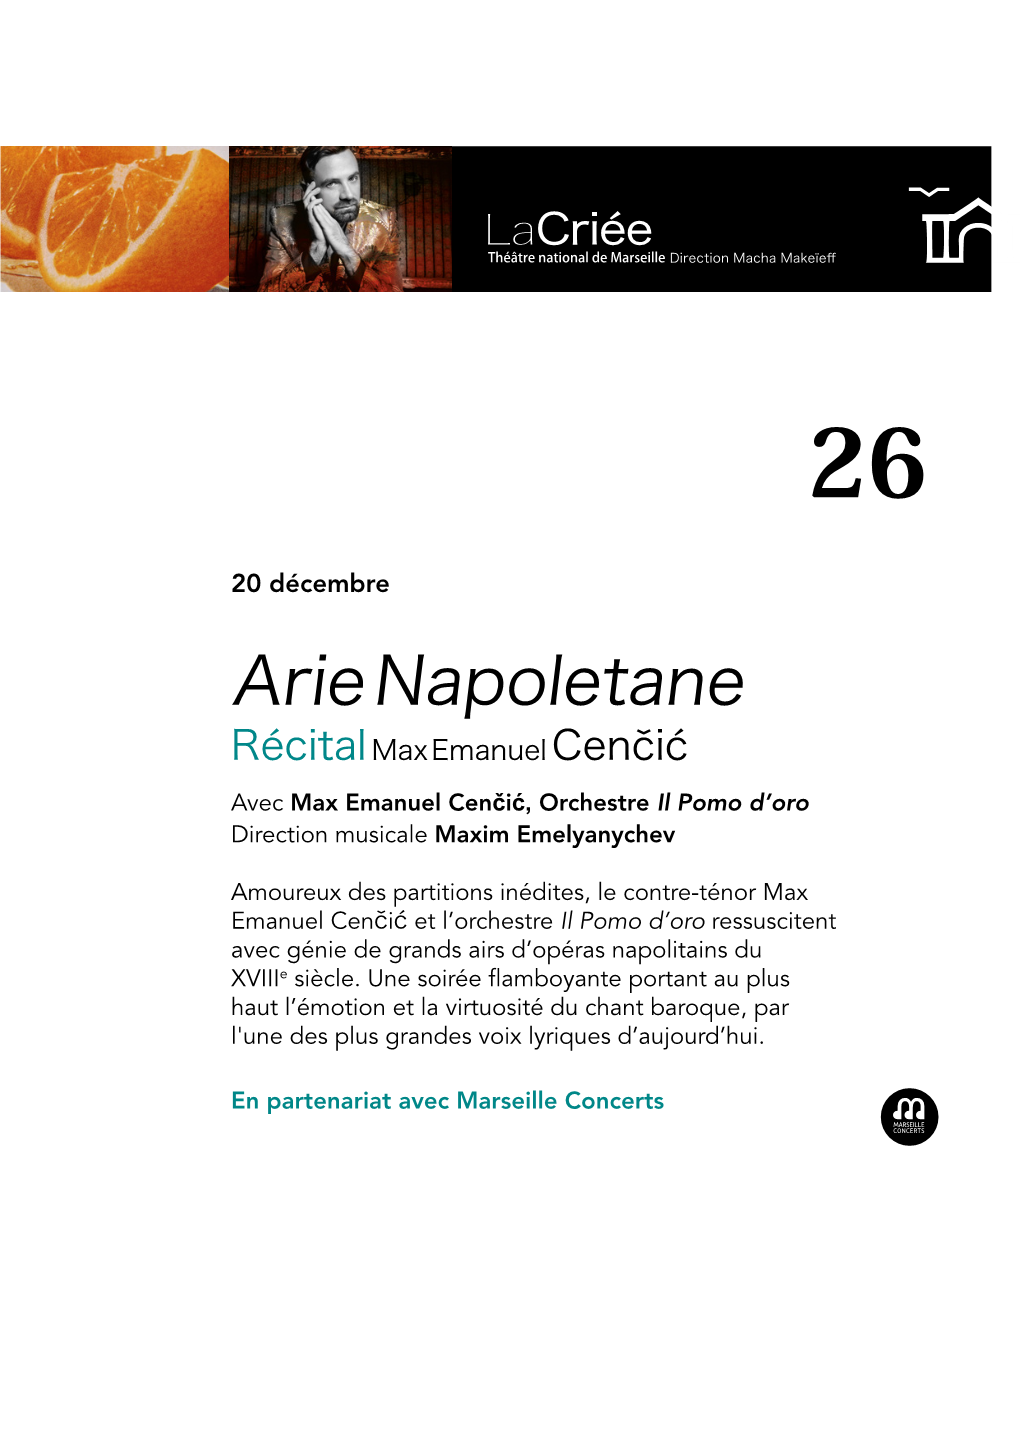 Arie Napoletane Xième Page Récital Max Emanuel Cenčić Dates En Corps 14